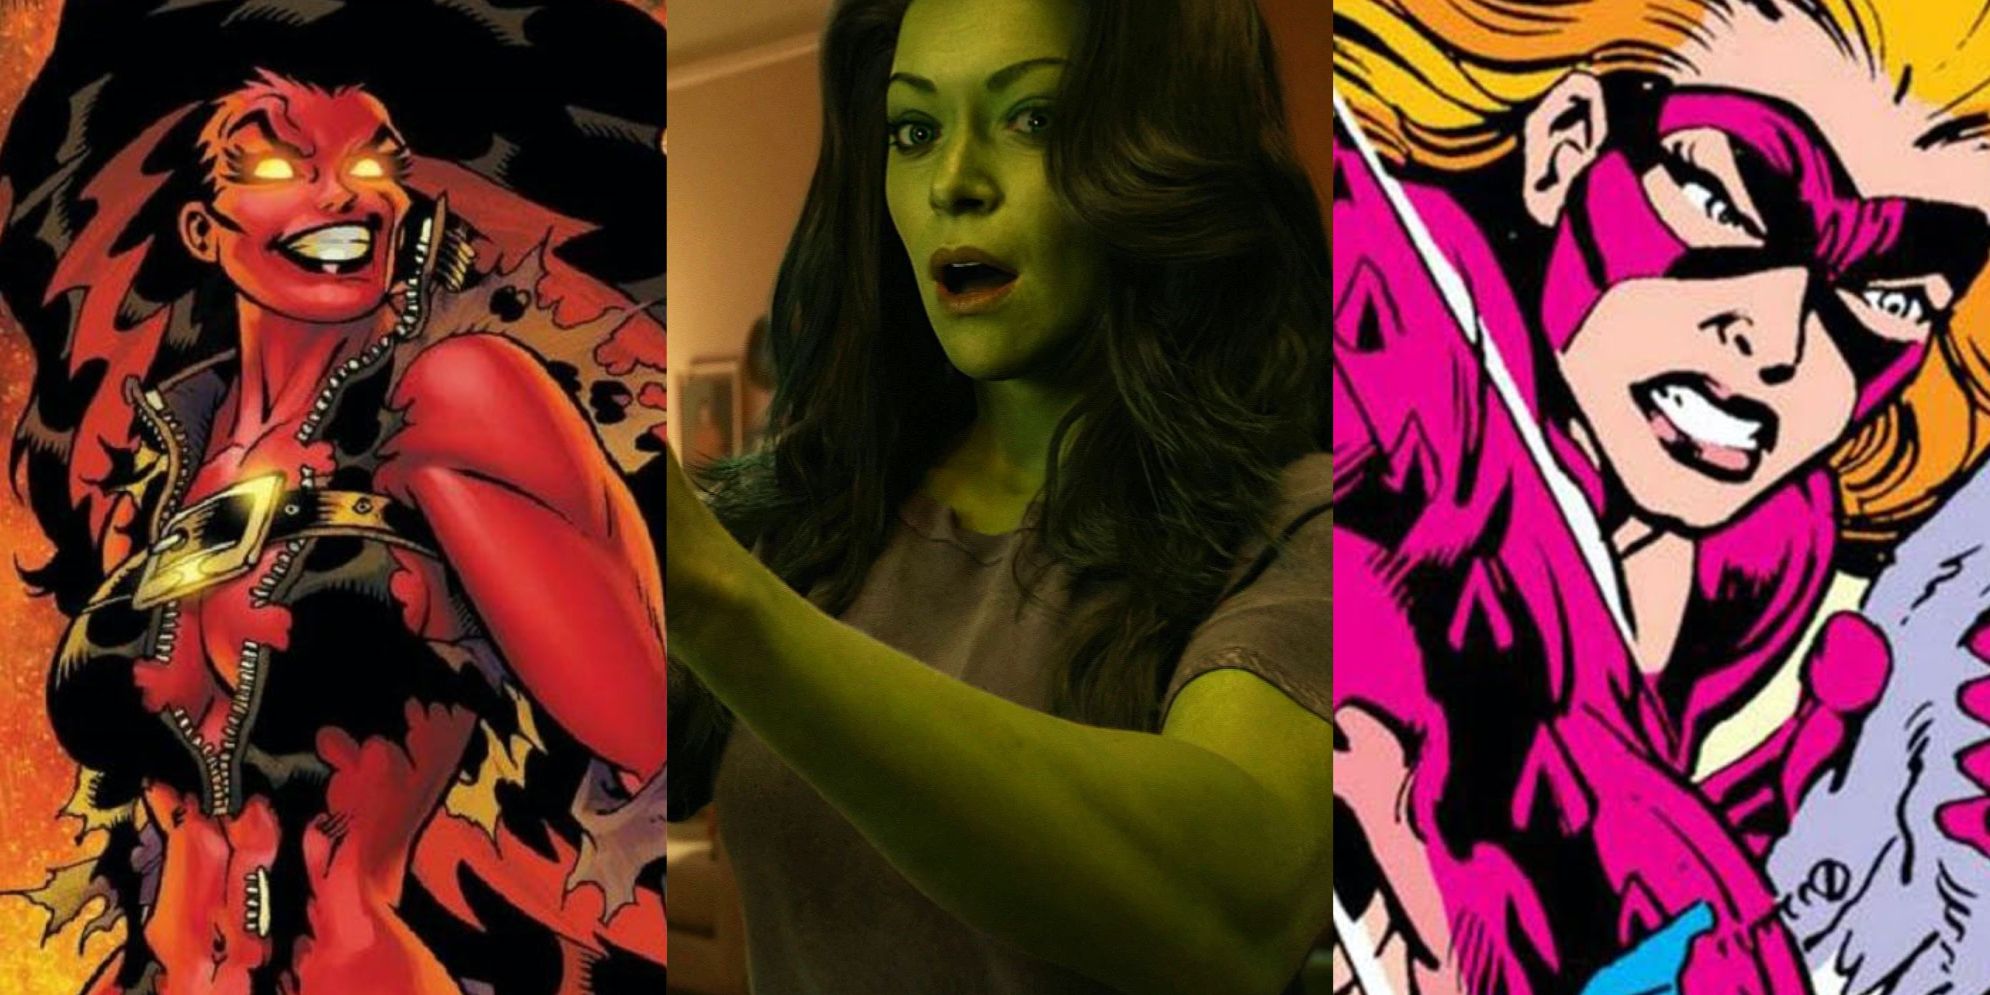 Split image of Red She Hulk from Marvel Comics, She-Hulk from MCU, and Titania from Marvel Comics.